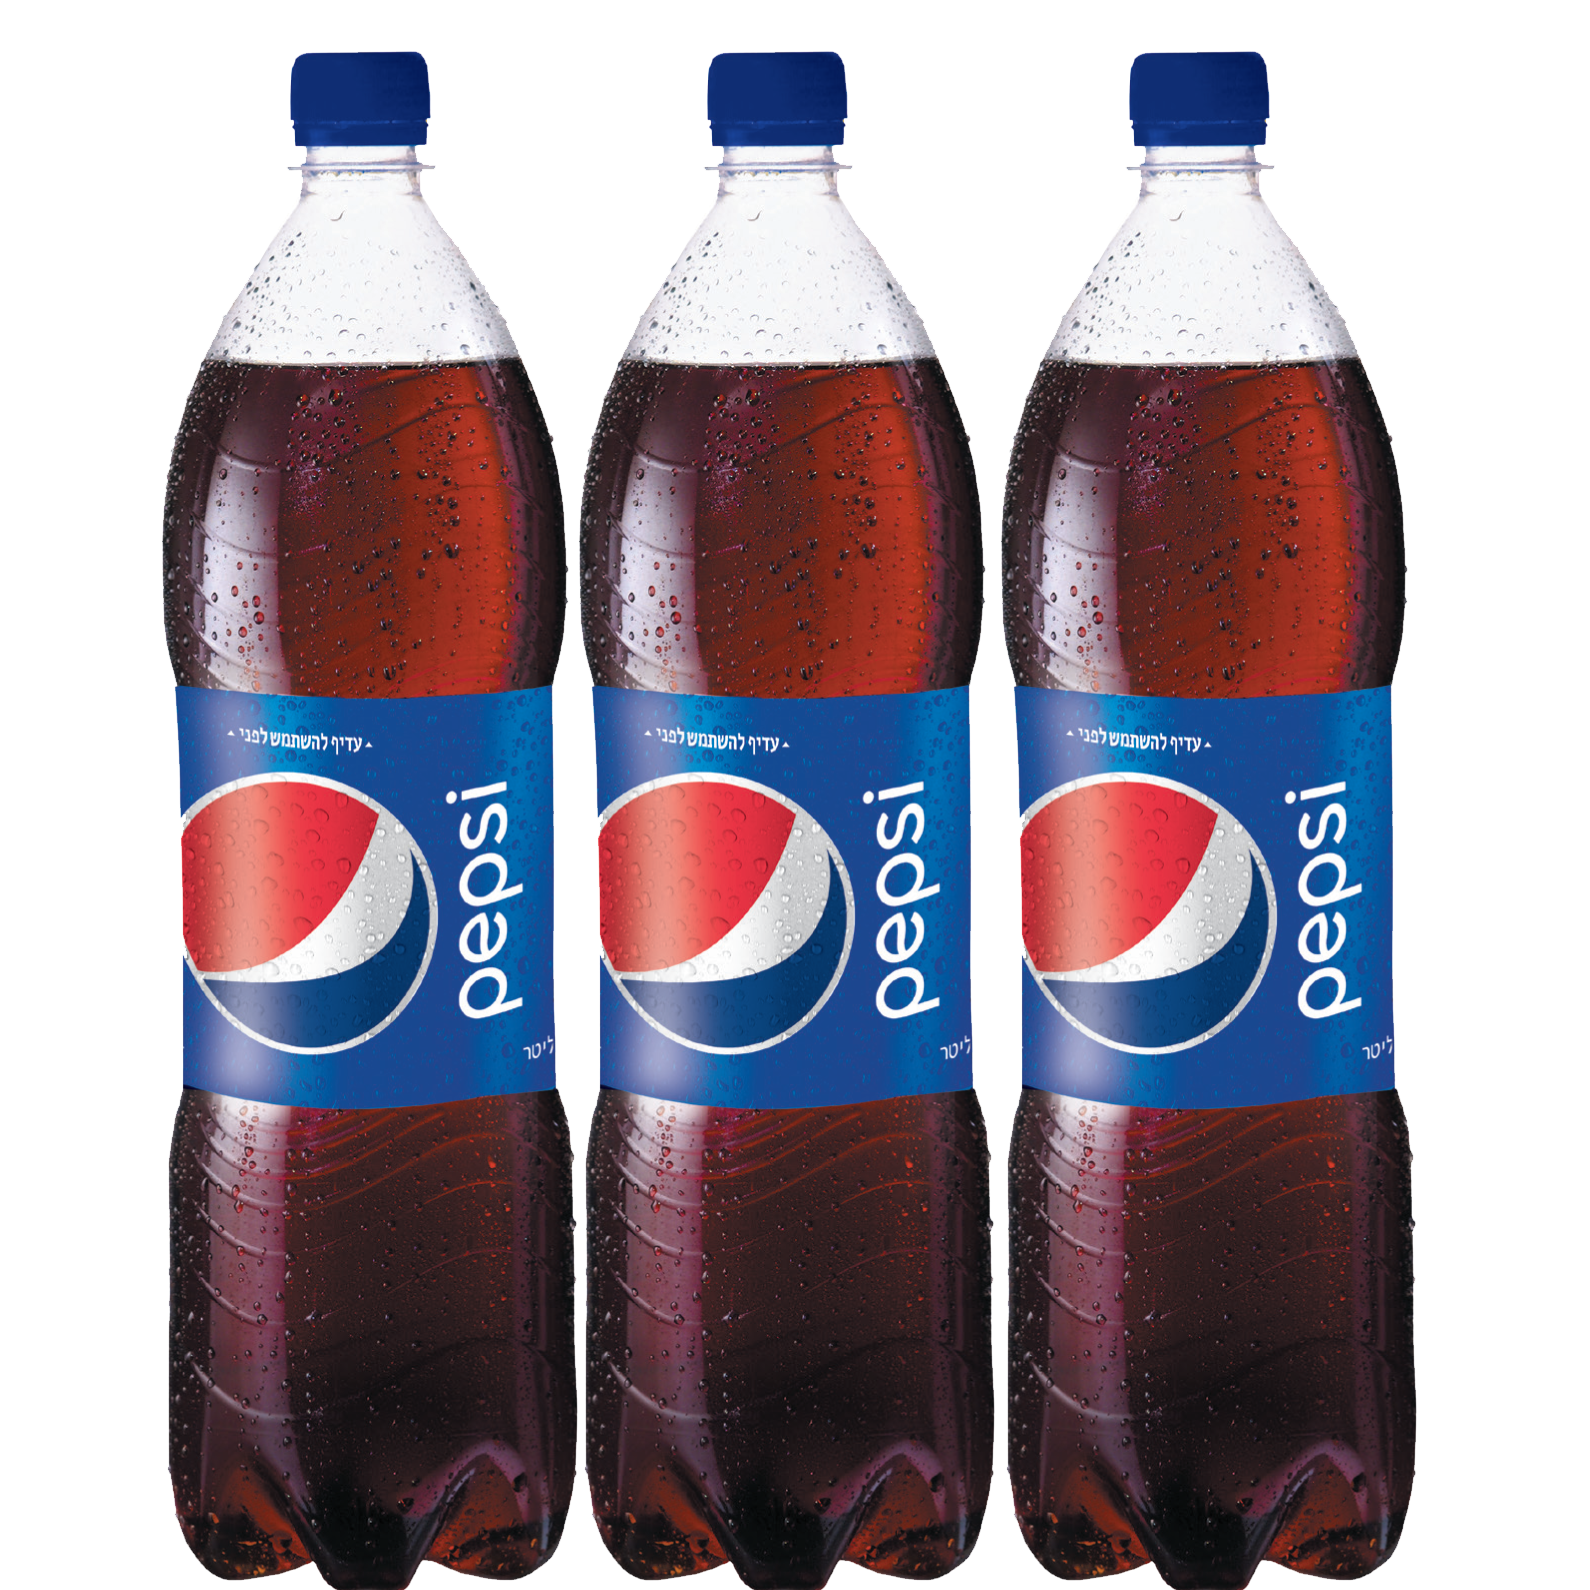 Pepsi PNG hd